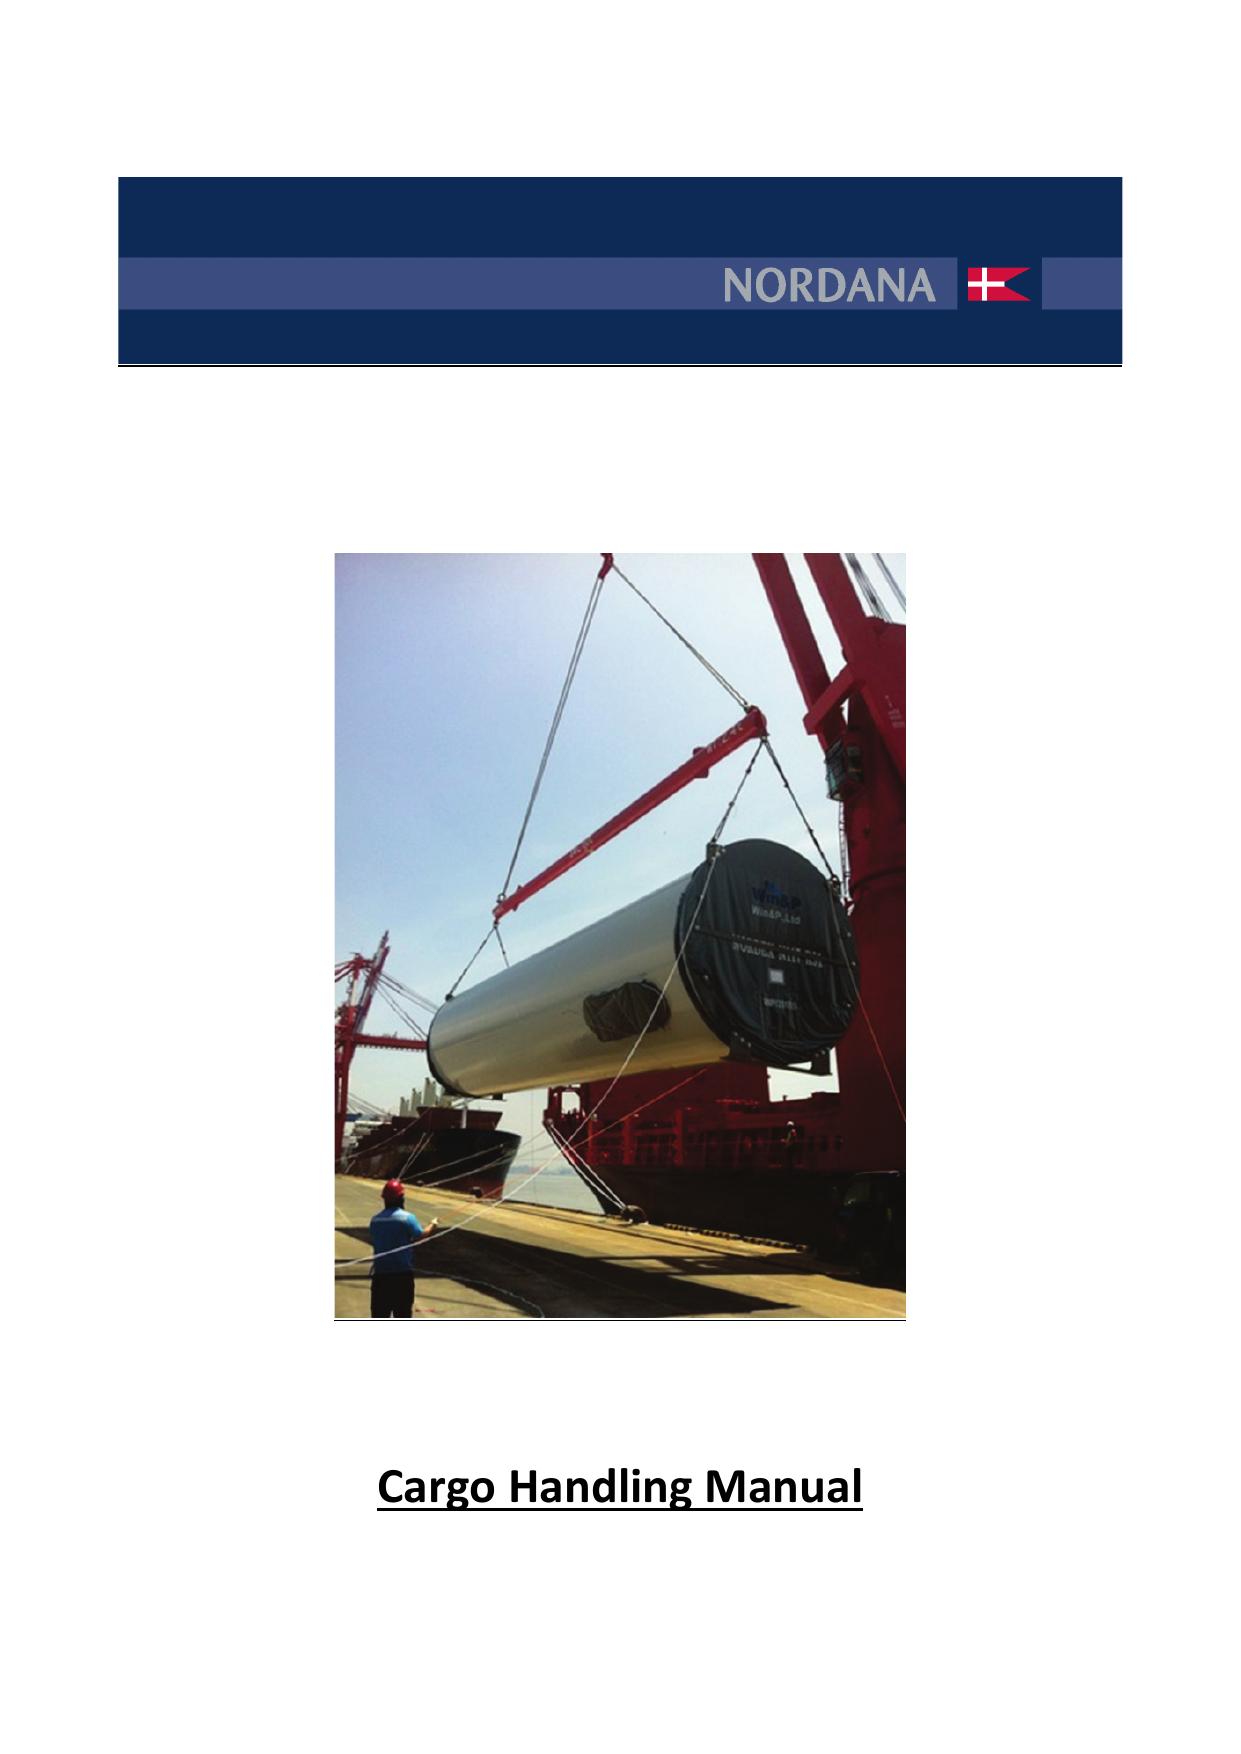 Nordana Cargo Handling Manual by HWI